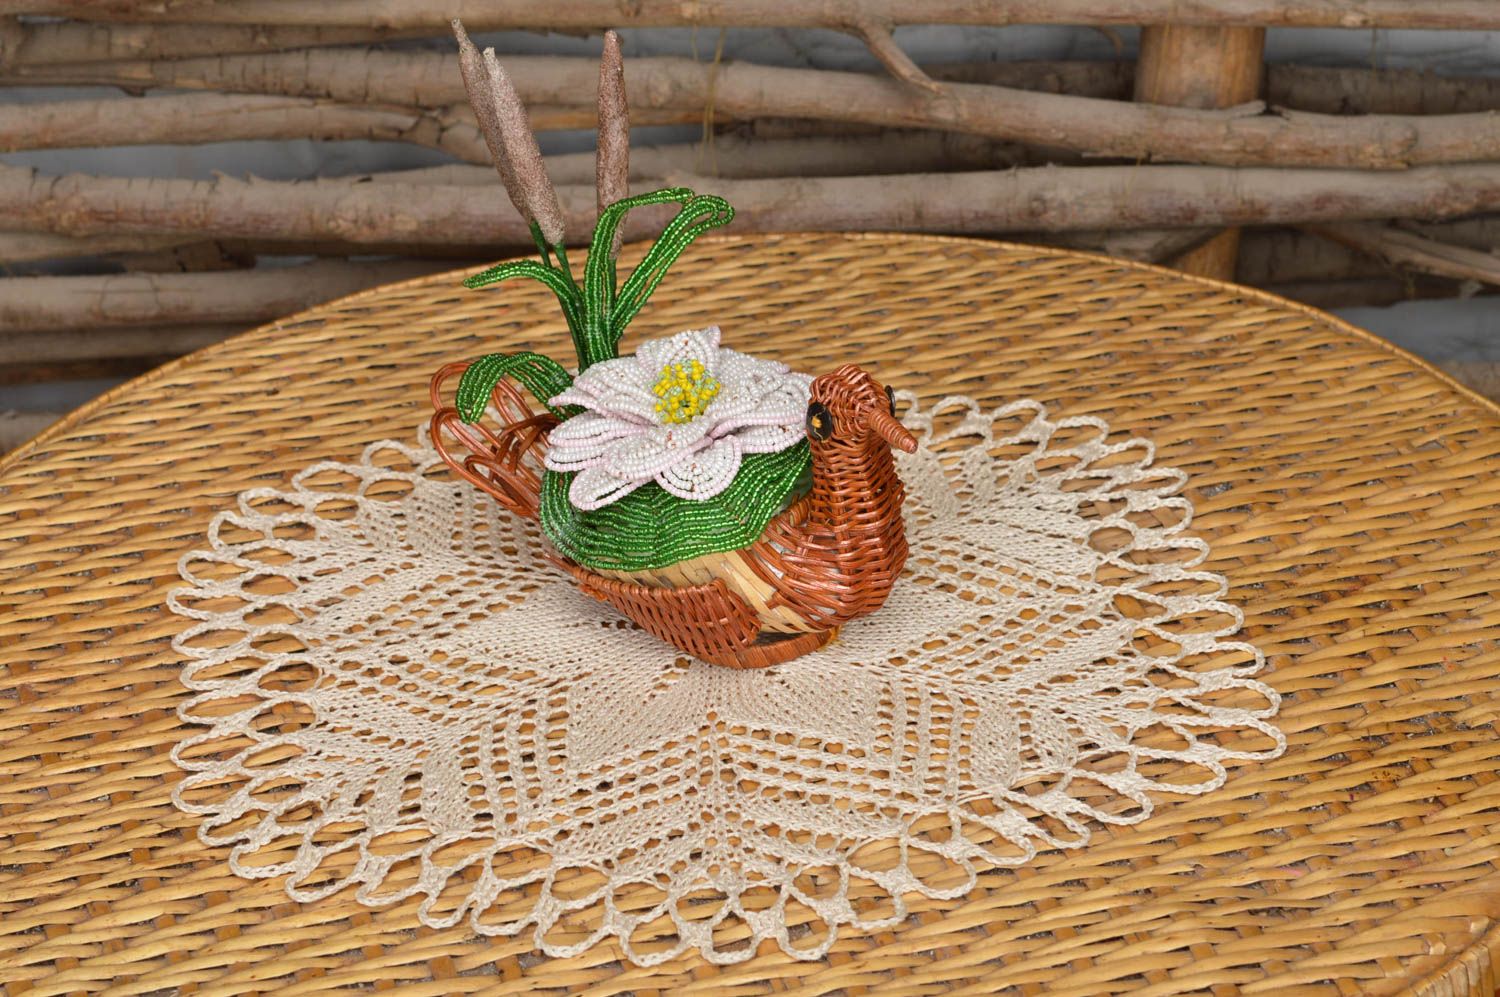 Servilleta tejida y macetero original con flores decorativas hechos a mano foto 1